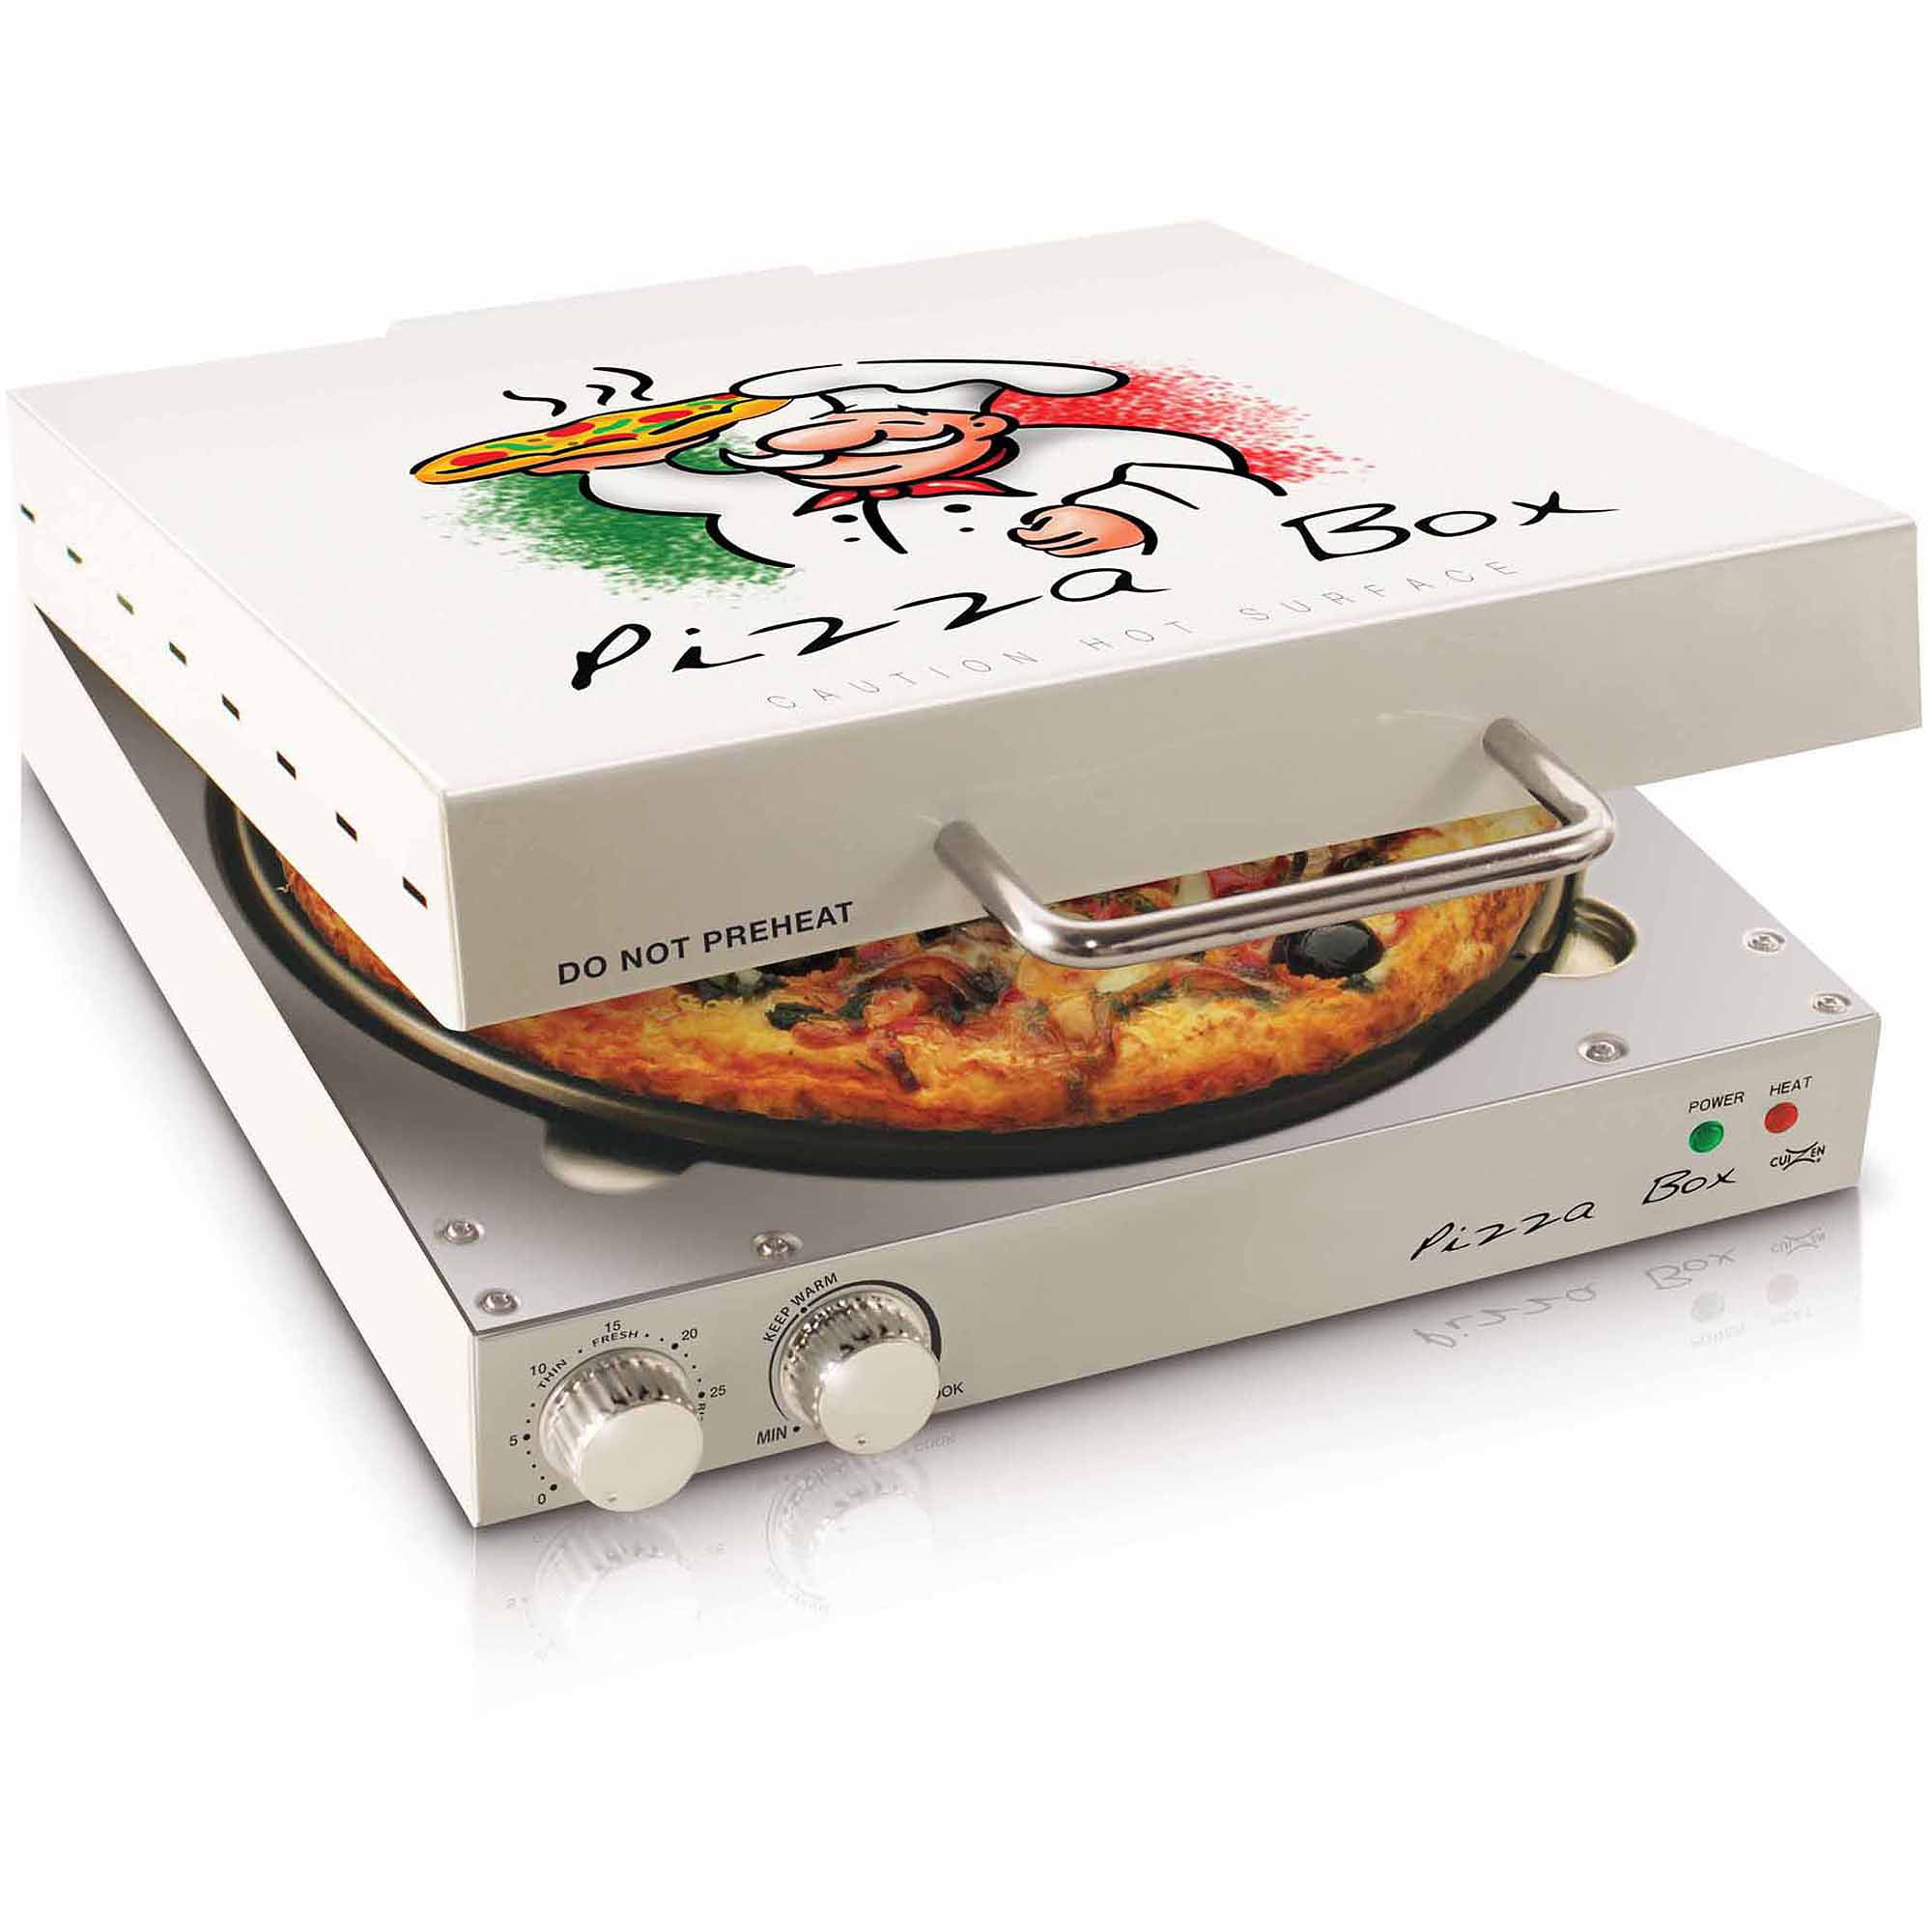 Find the best price on Presto Pizza Box Chef